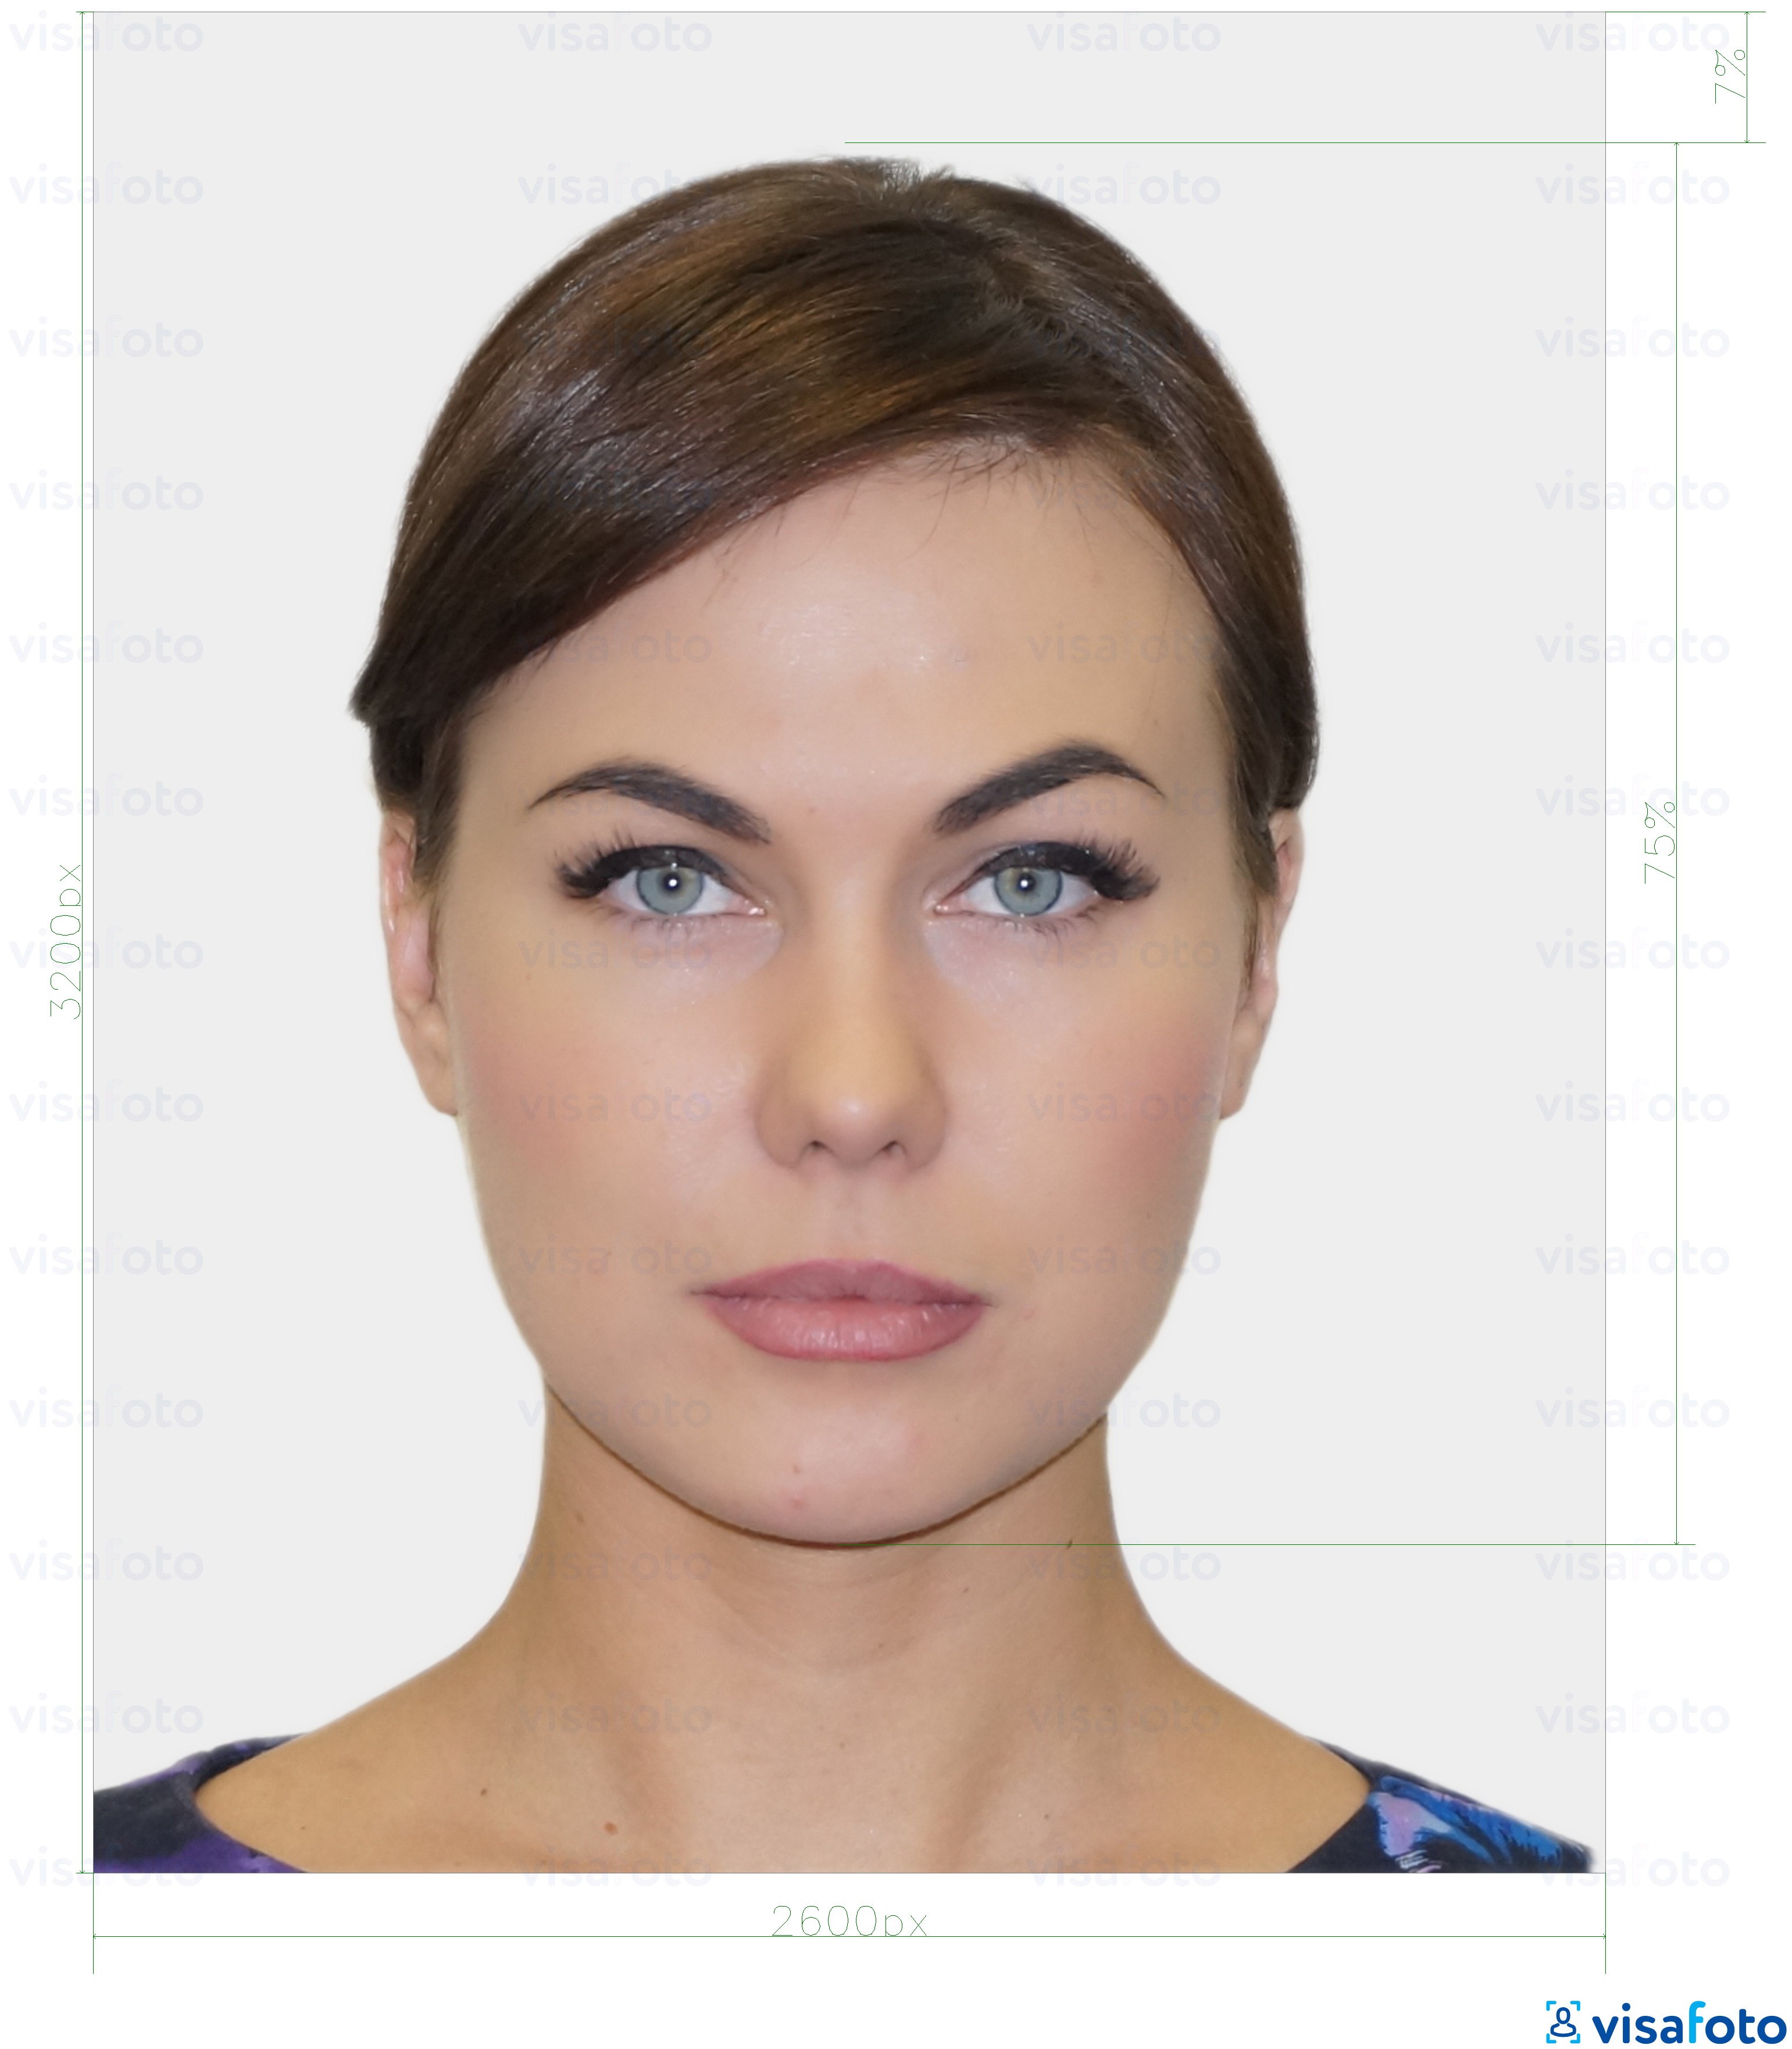 Esempio di foto per Carta d'identità digitale residente in Estonia 1300x1600 pixel con specifiche delle dimensioni esatte